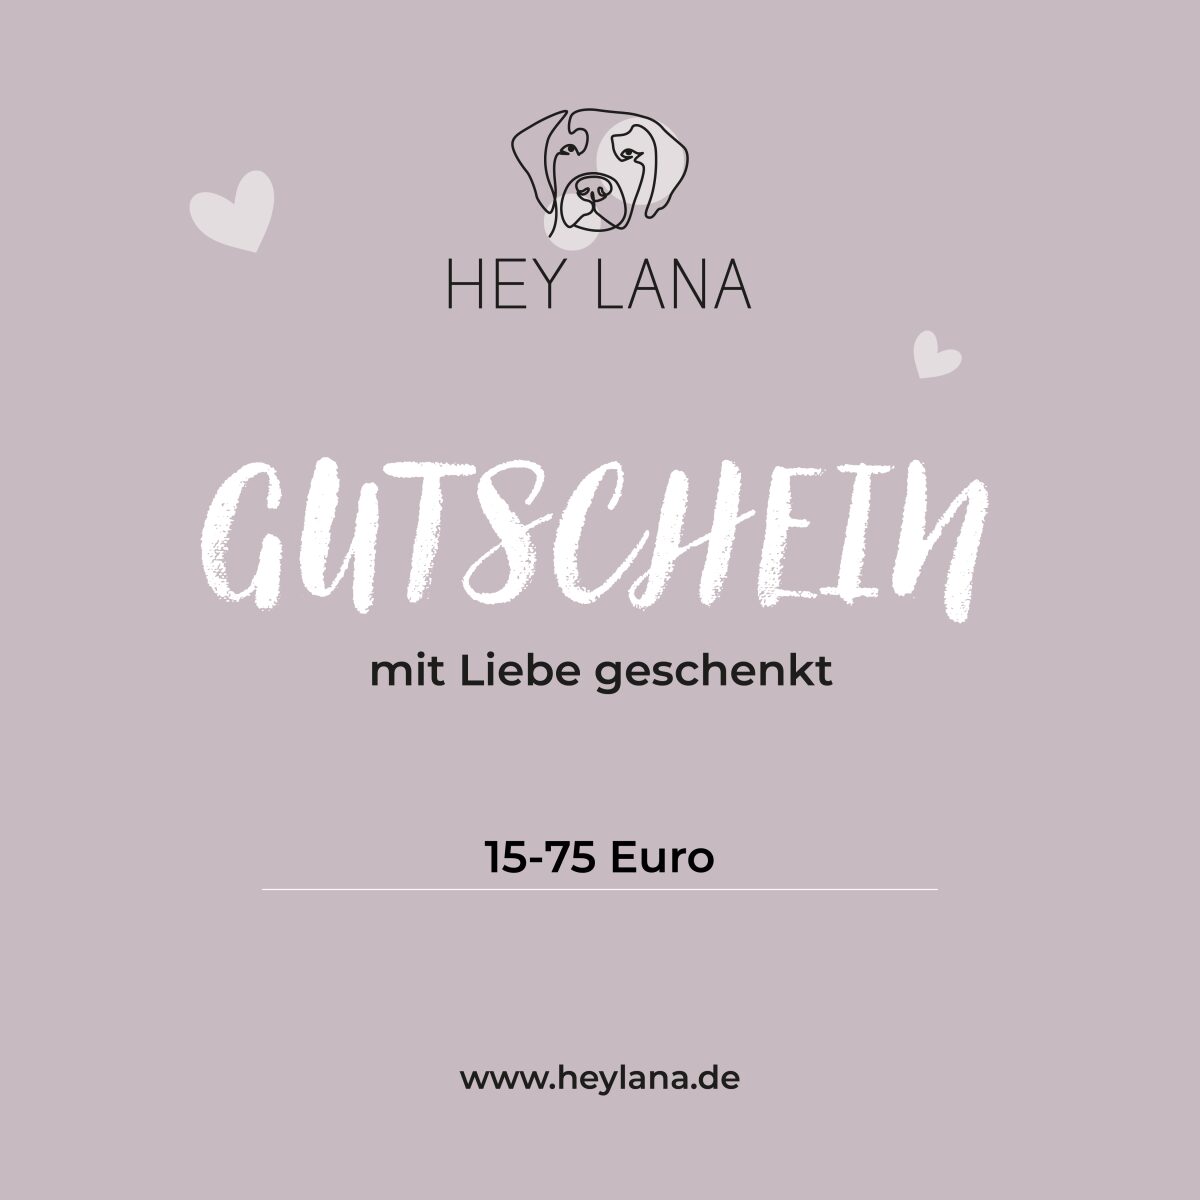 Hey Lana Gutschein mit Liebe geschenkt